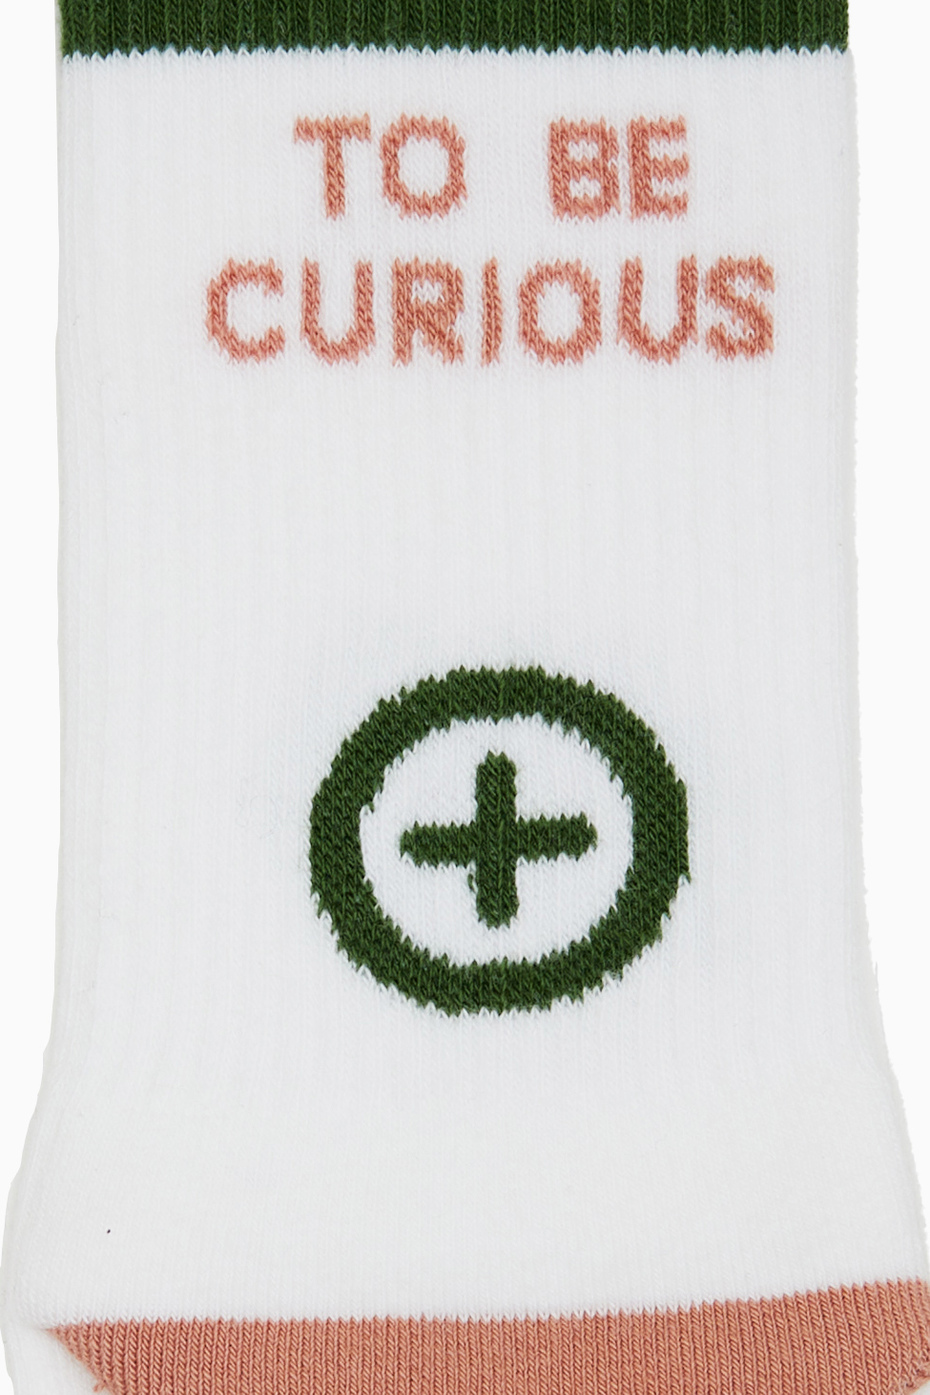 Calze corte unisex in spugna di cotone bianco Gallo pharmacy con scritta "to be curious" - Gallo 1927 - Official Online Shop